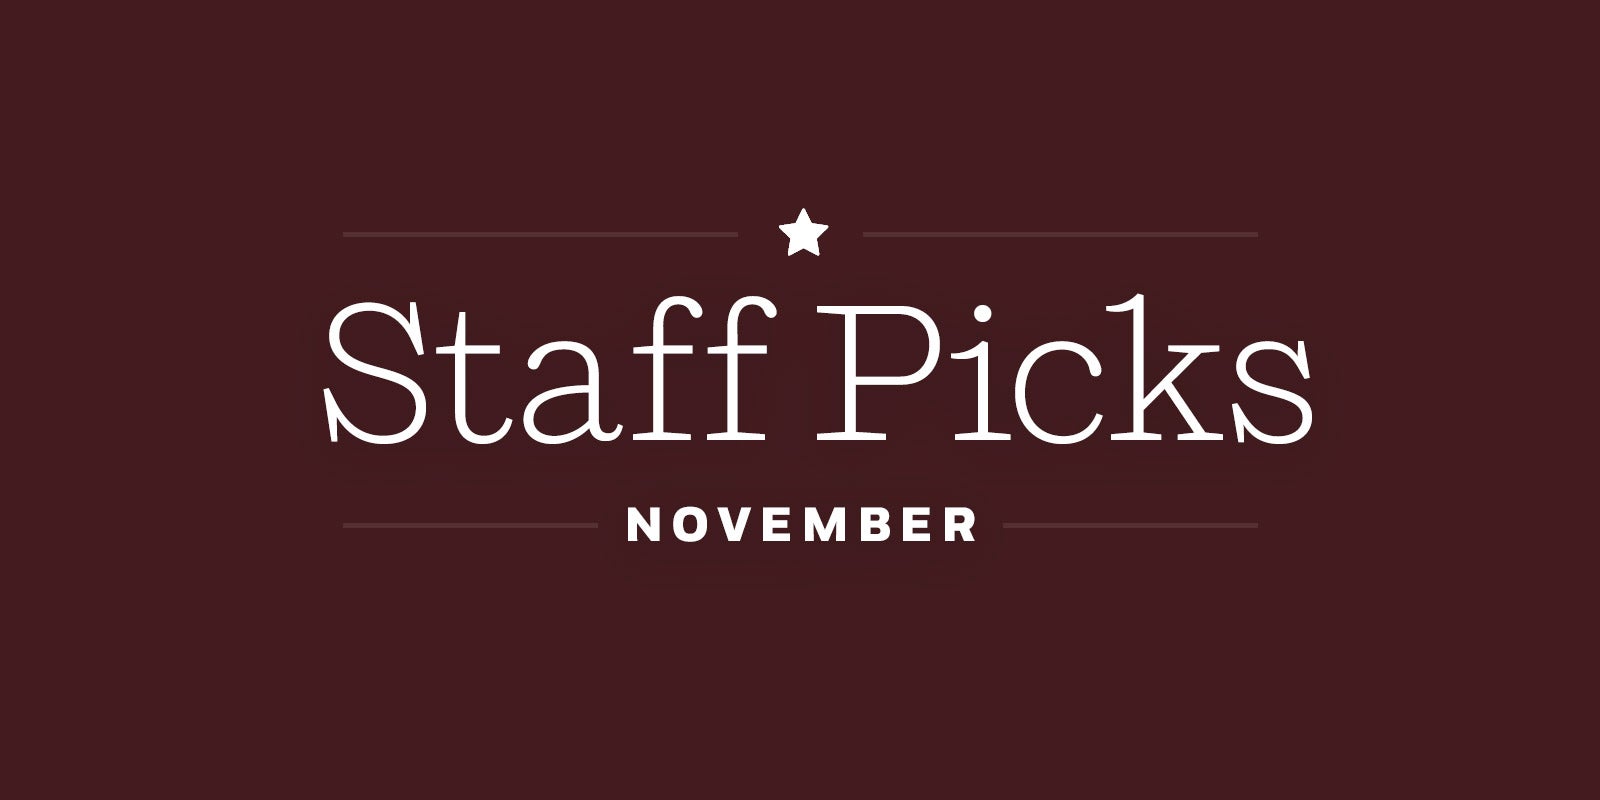 *November Staff Picks*